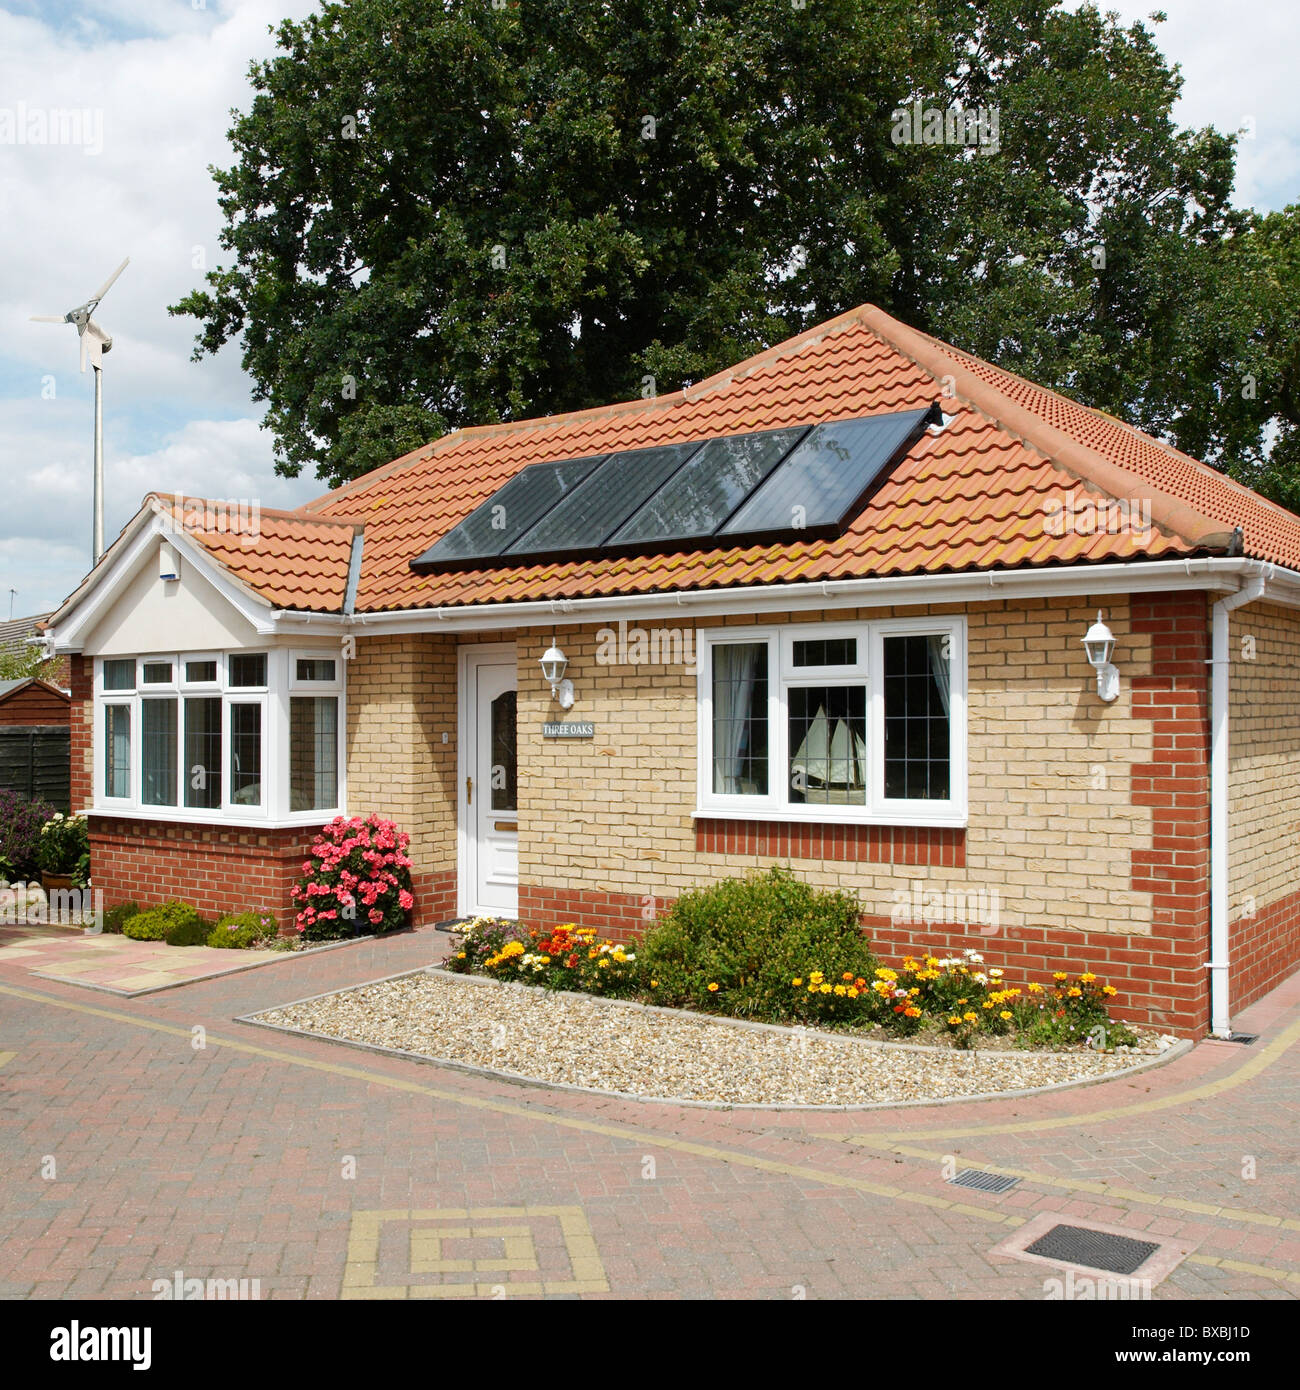 Solarheizung-Panels auf einen Bungalow Dach Clacton-on-Sea Essex UK Stockfoto